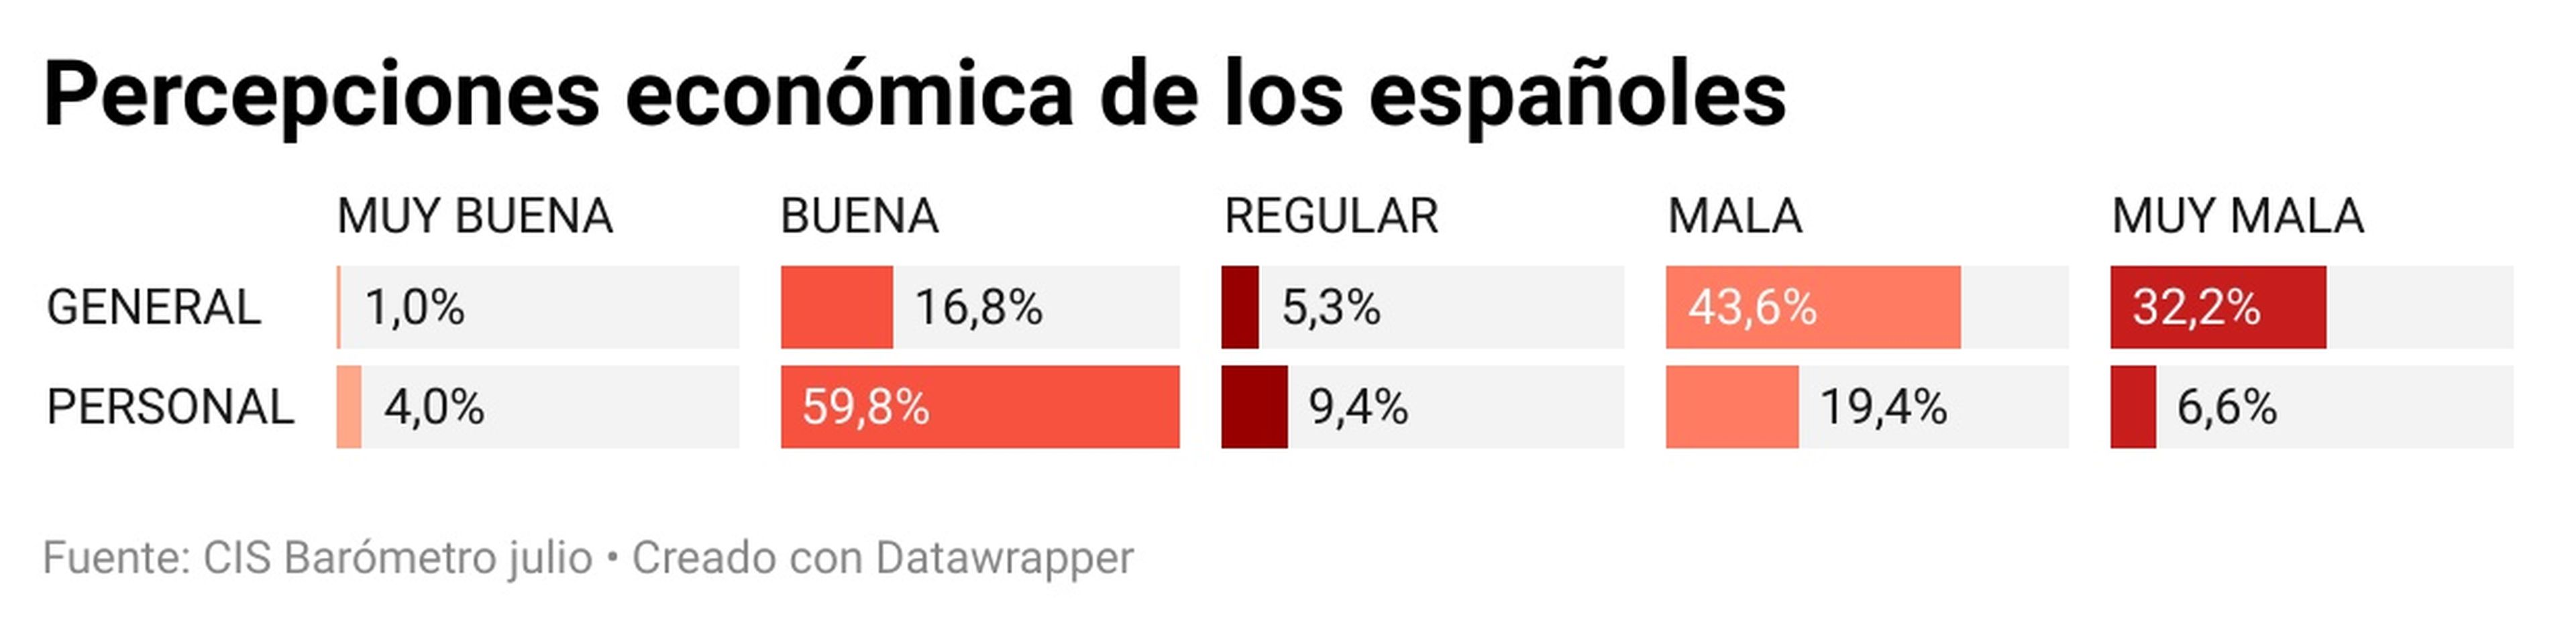 Percepciones económicas de los españoles